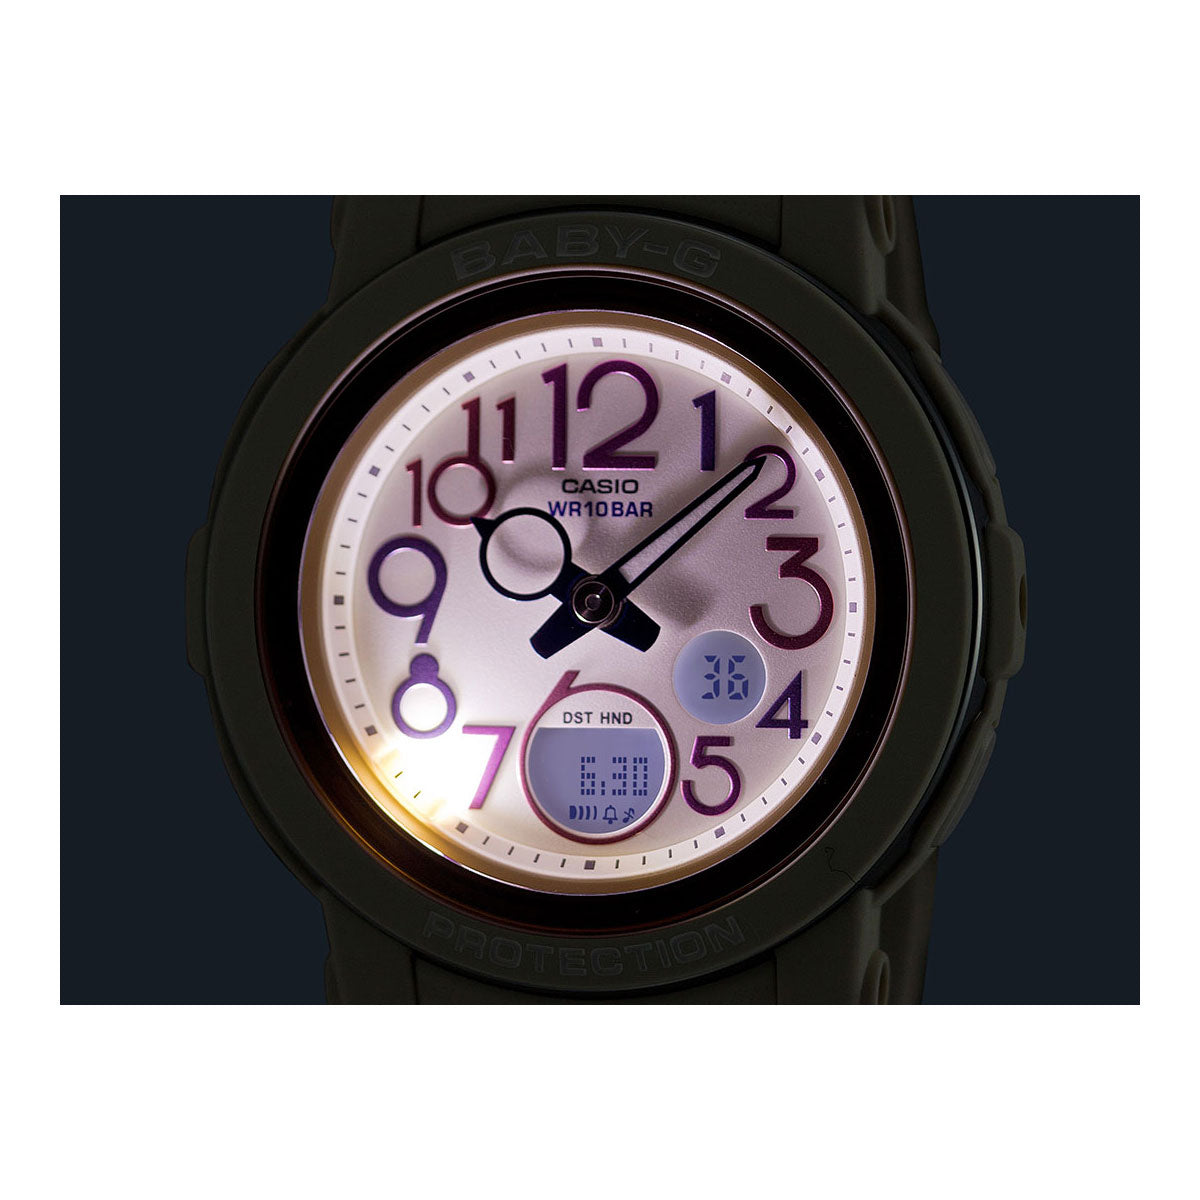 BABY-G カシオ ベビーG レディース 腕時計 BGA-290PA-7AJF ホワイト